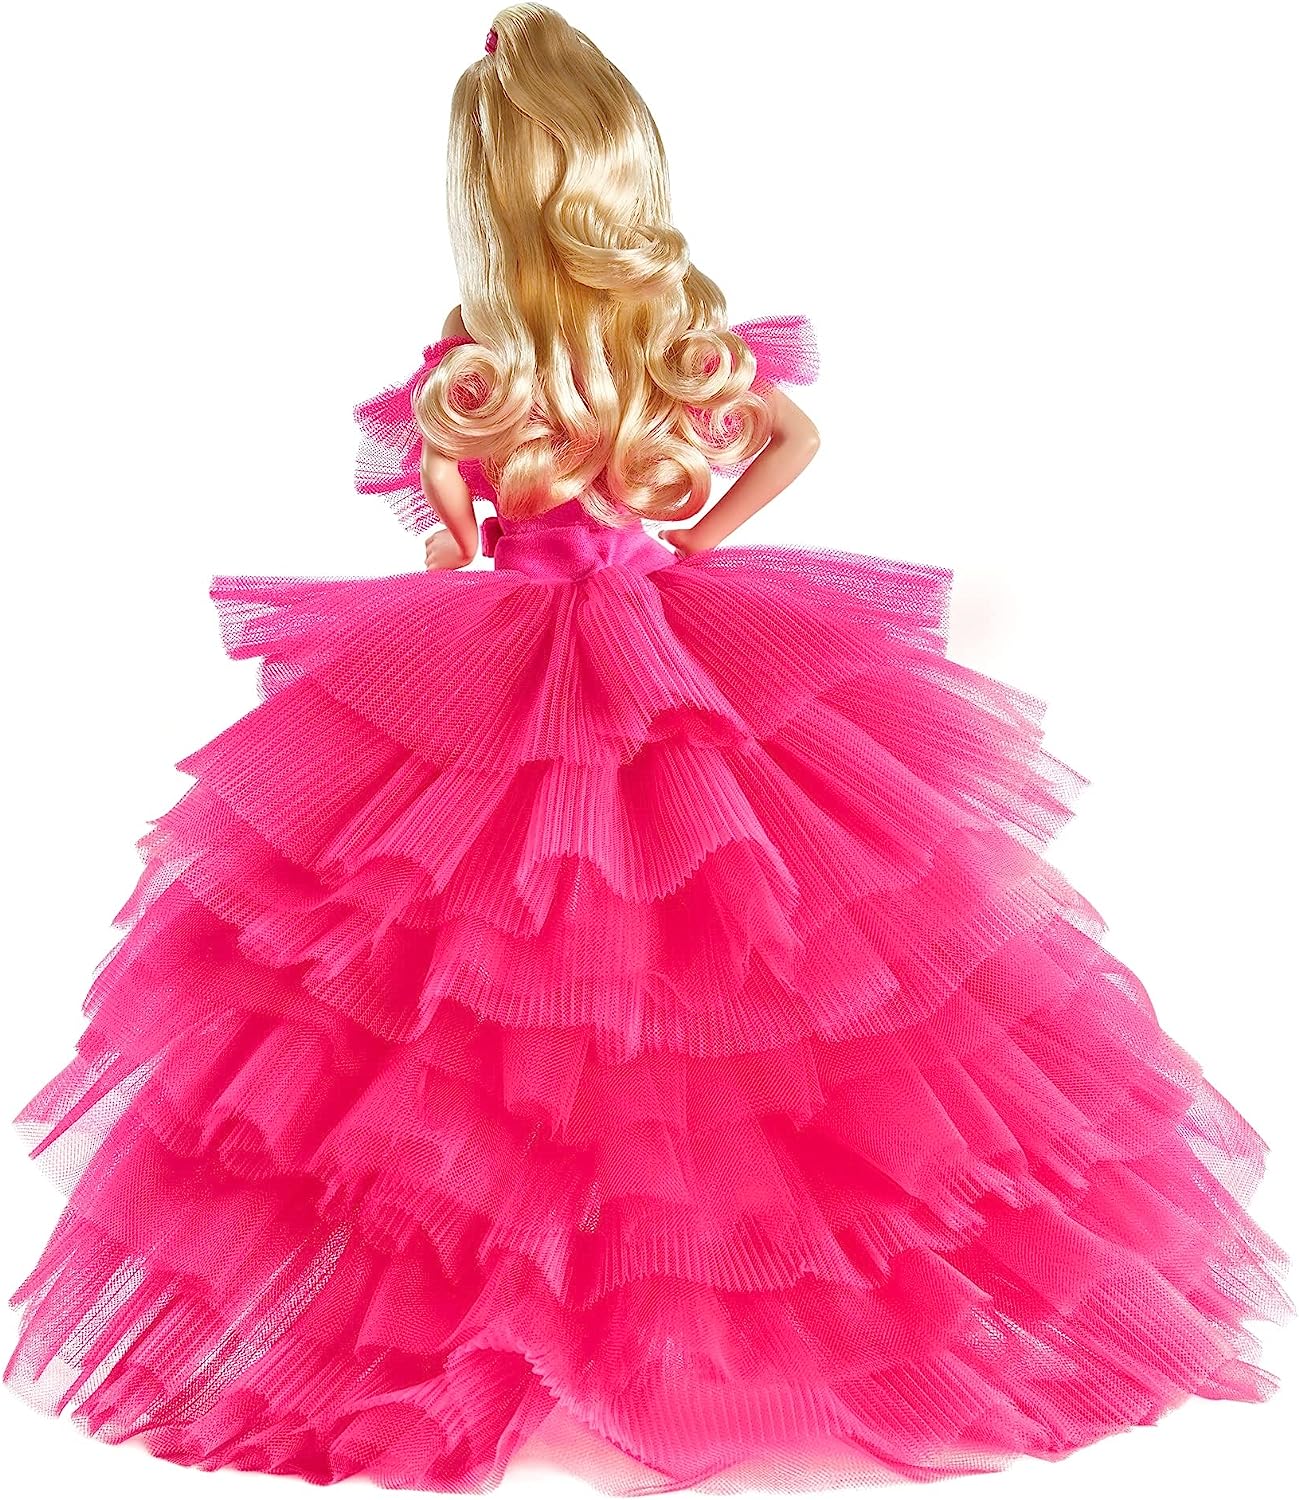 クーポン商品 【送料込】バービー ピンクプレミア ピンクコレクションドール Barbie ぬいぐるみ